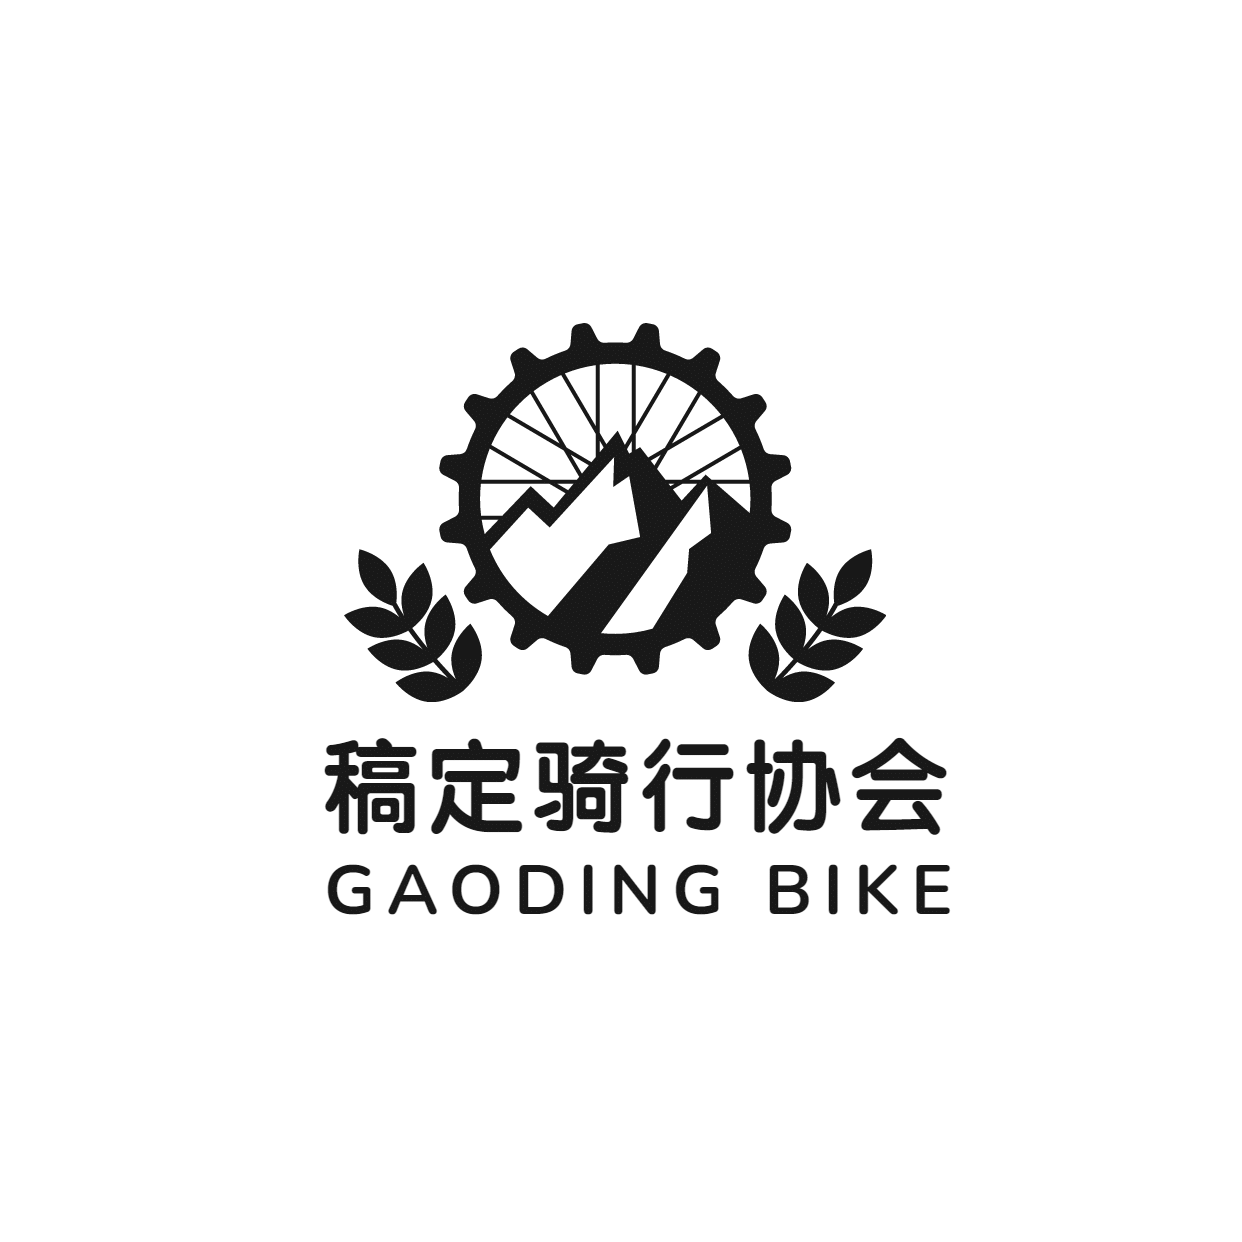 旅游骑行协会绿色出行简约宣传logo头像